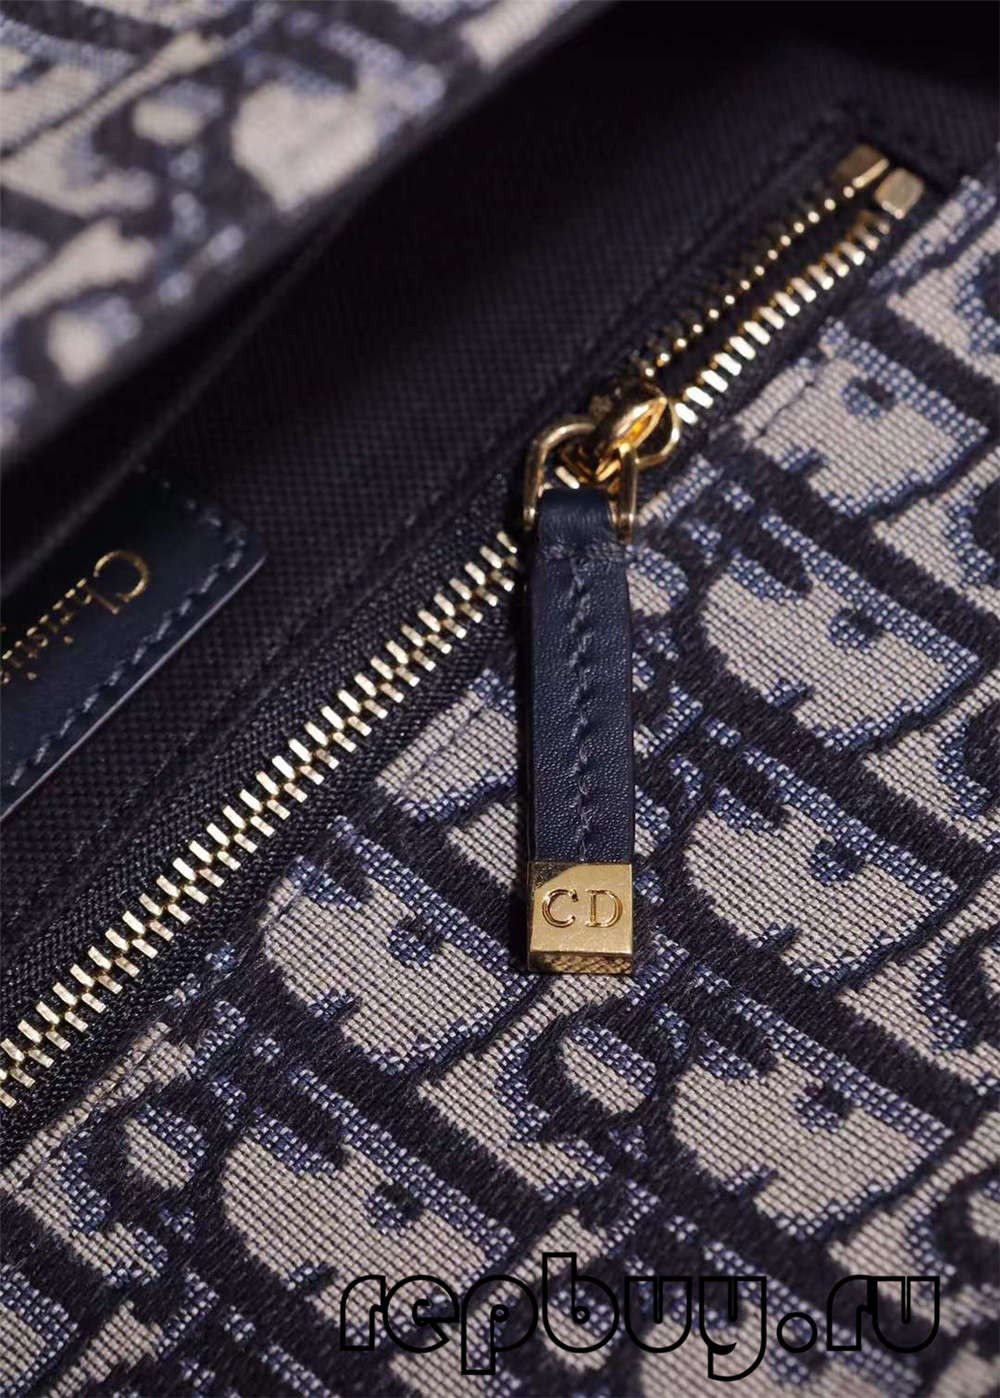 Dior 30 Montaigne Top Replica Bags 24cm Details Hardware (Останнє обладнання 2022 року) - Інтернет-магазин підробленої сумки Louis Vuitton найкращої якості, копія дизайнерської сумки ru